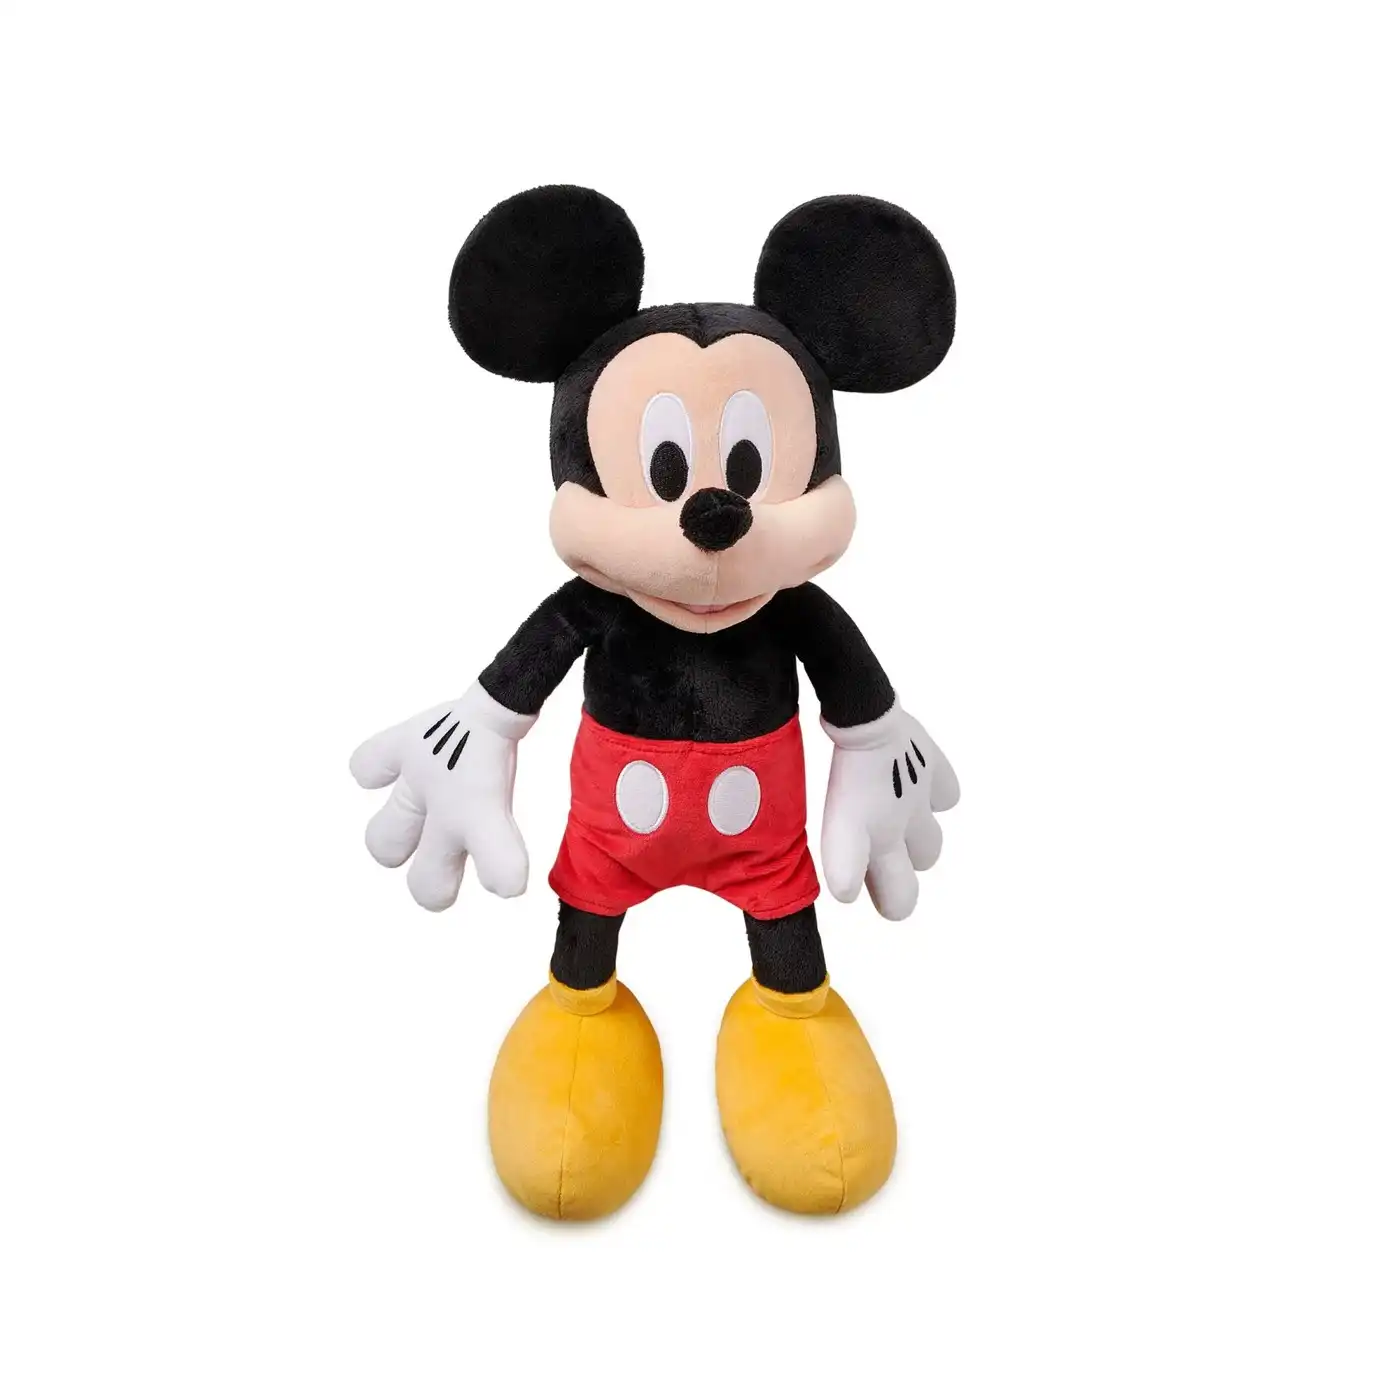 Disney Medium Plush - Mickey